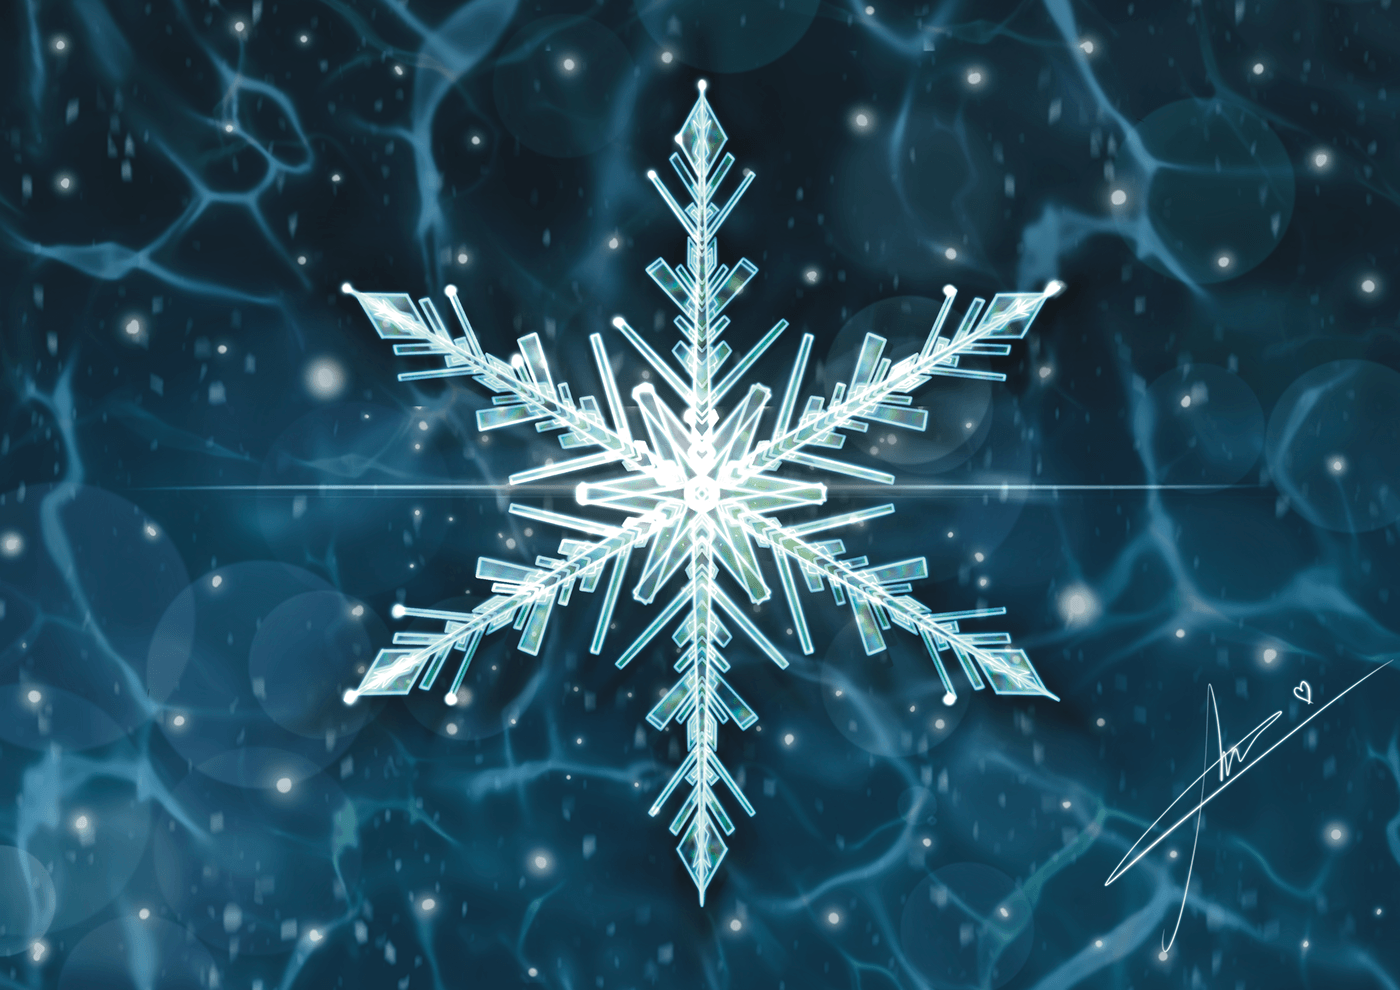 Procreate digital painting art snowflakes Christmas